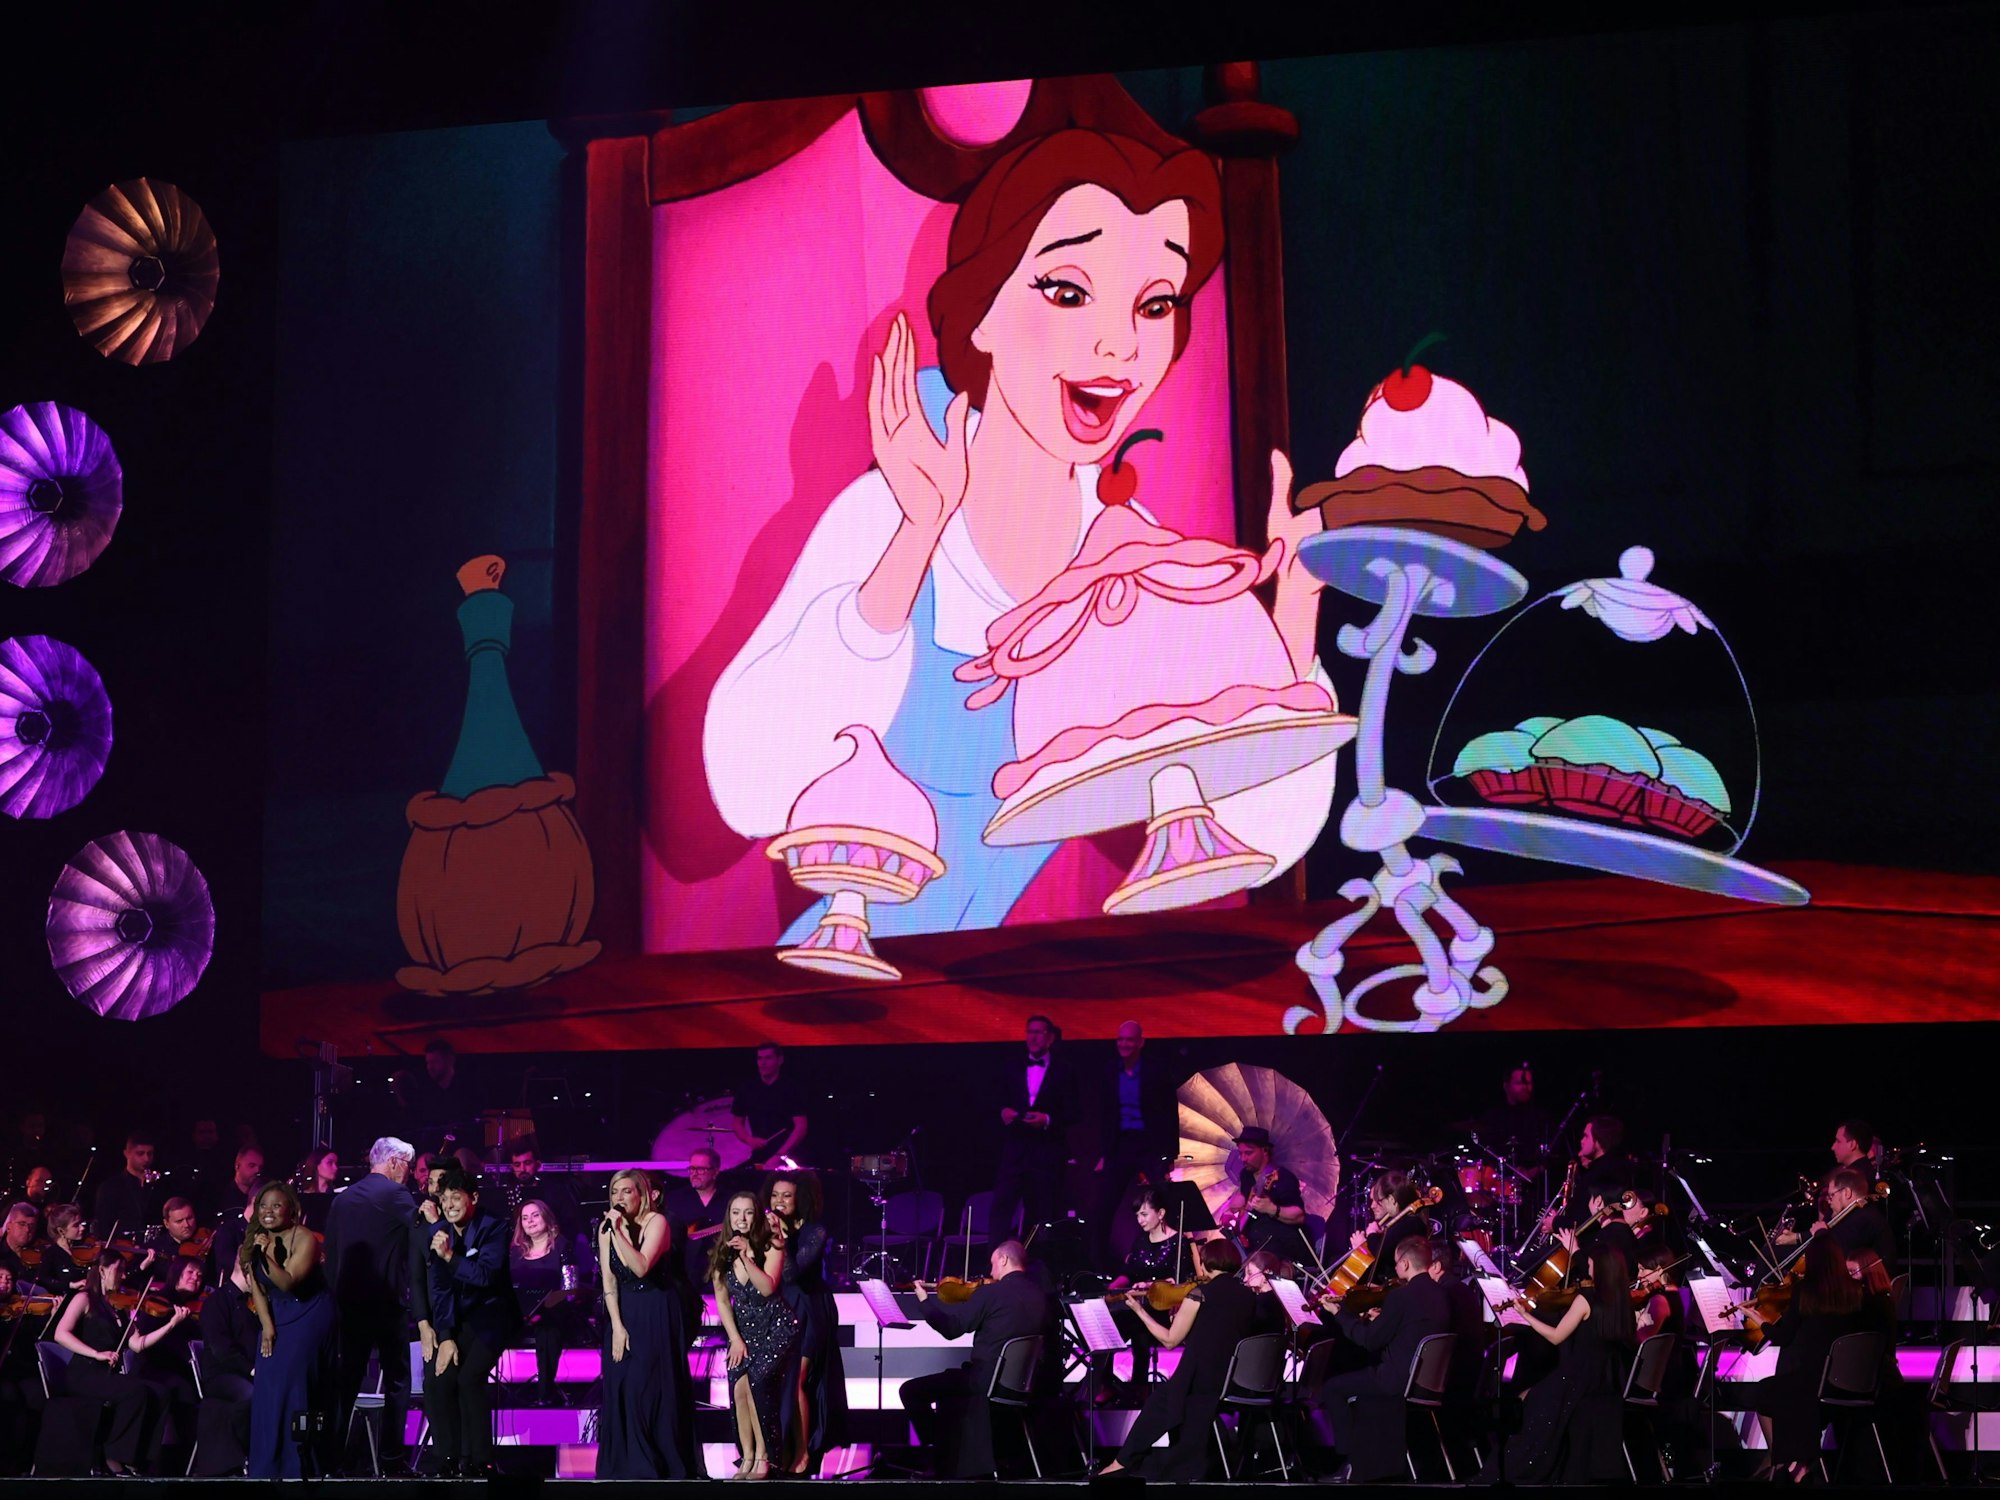 Das Orchester spielt auf der Bühne während man im Hintergrund eine Szene aus „Die Schöne und das Biest“ sieht.